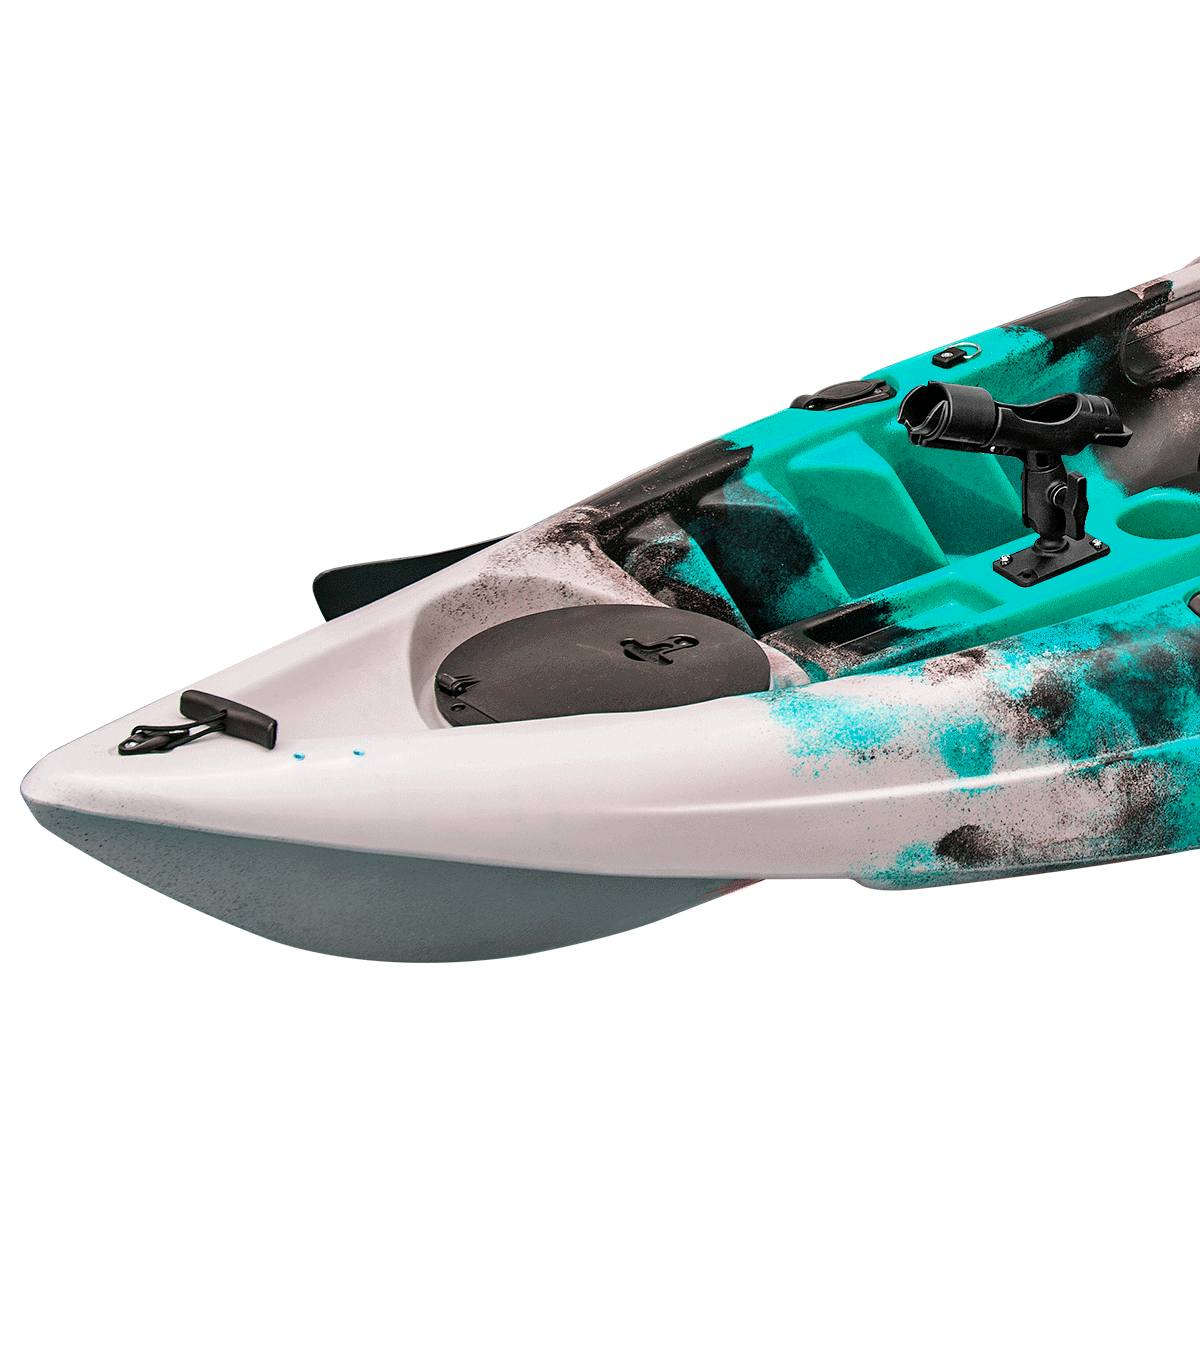 Kayak De Pesca Kol Outdoor Conger P Lite (280x82cm)